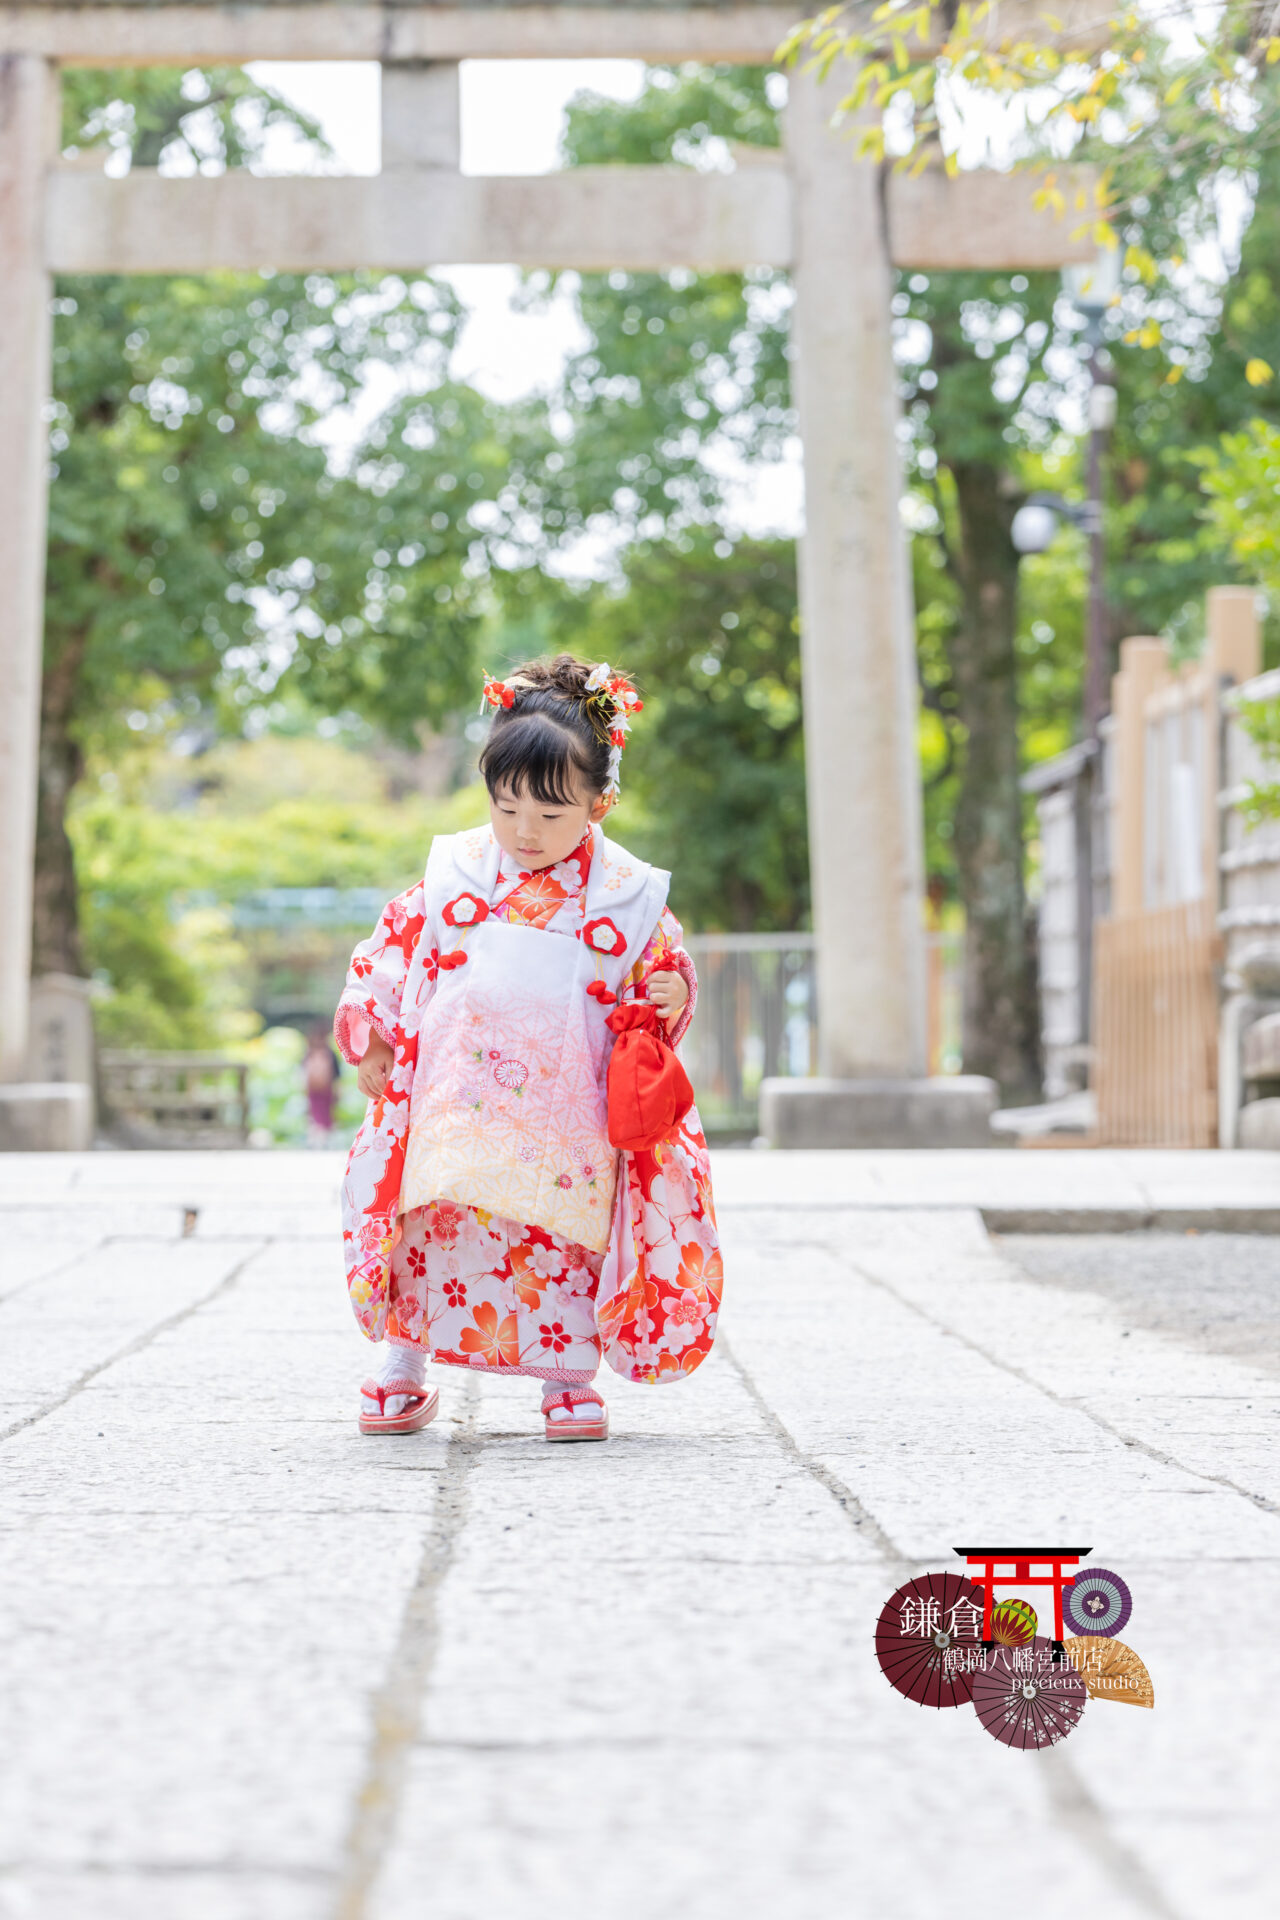 七五三参りの出張撮影 赤い着物の女の子 鎌倉鶴岡八幡宮